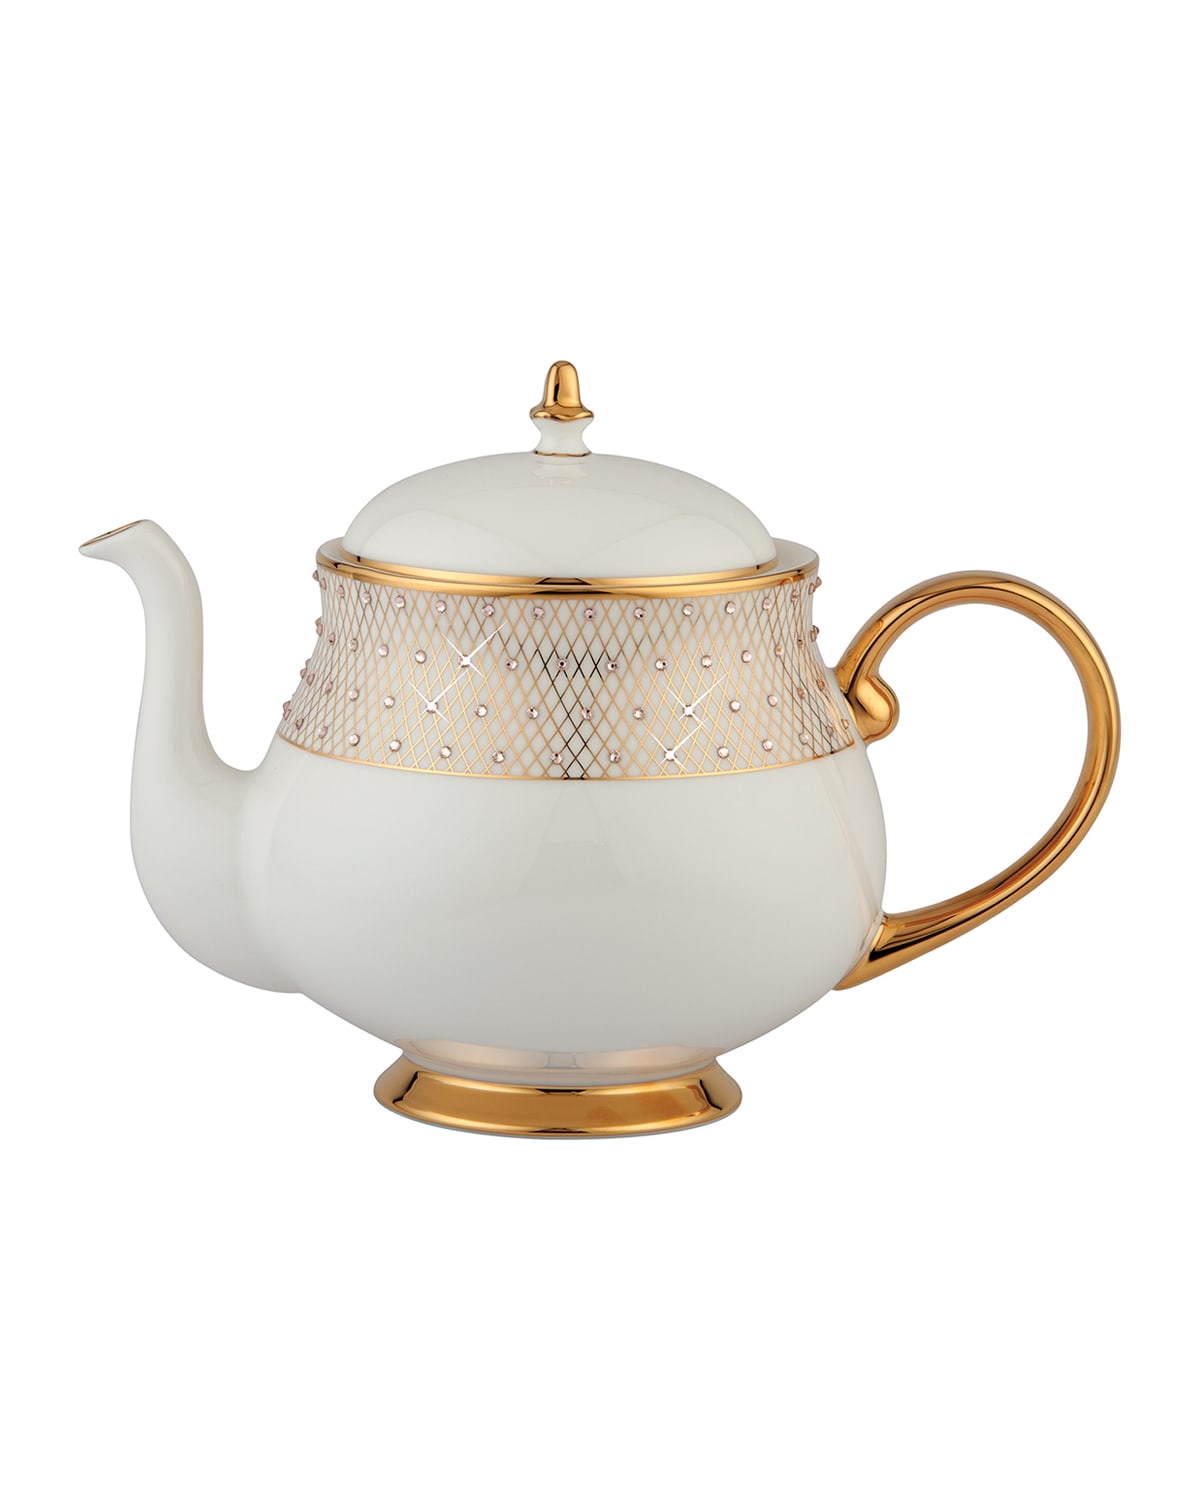 Prouna Princess Teapot In Gold